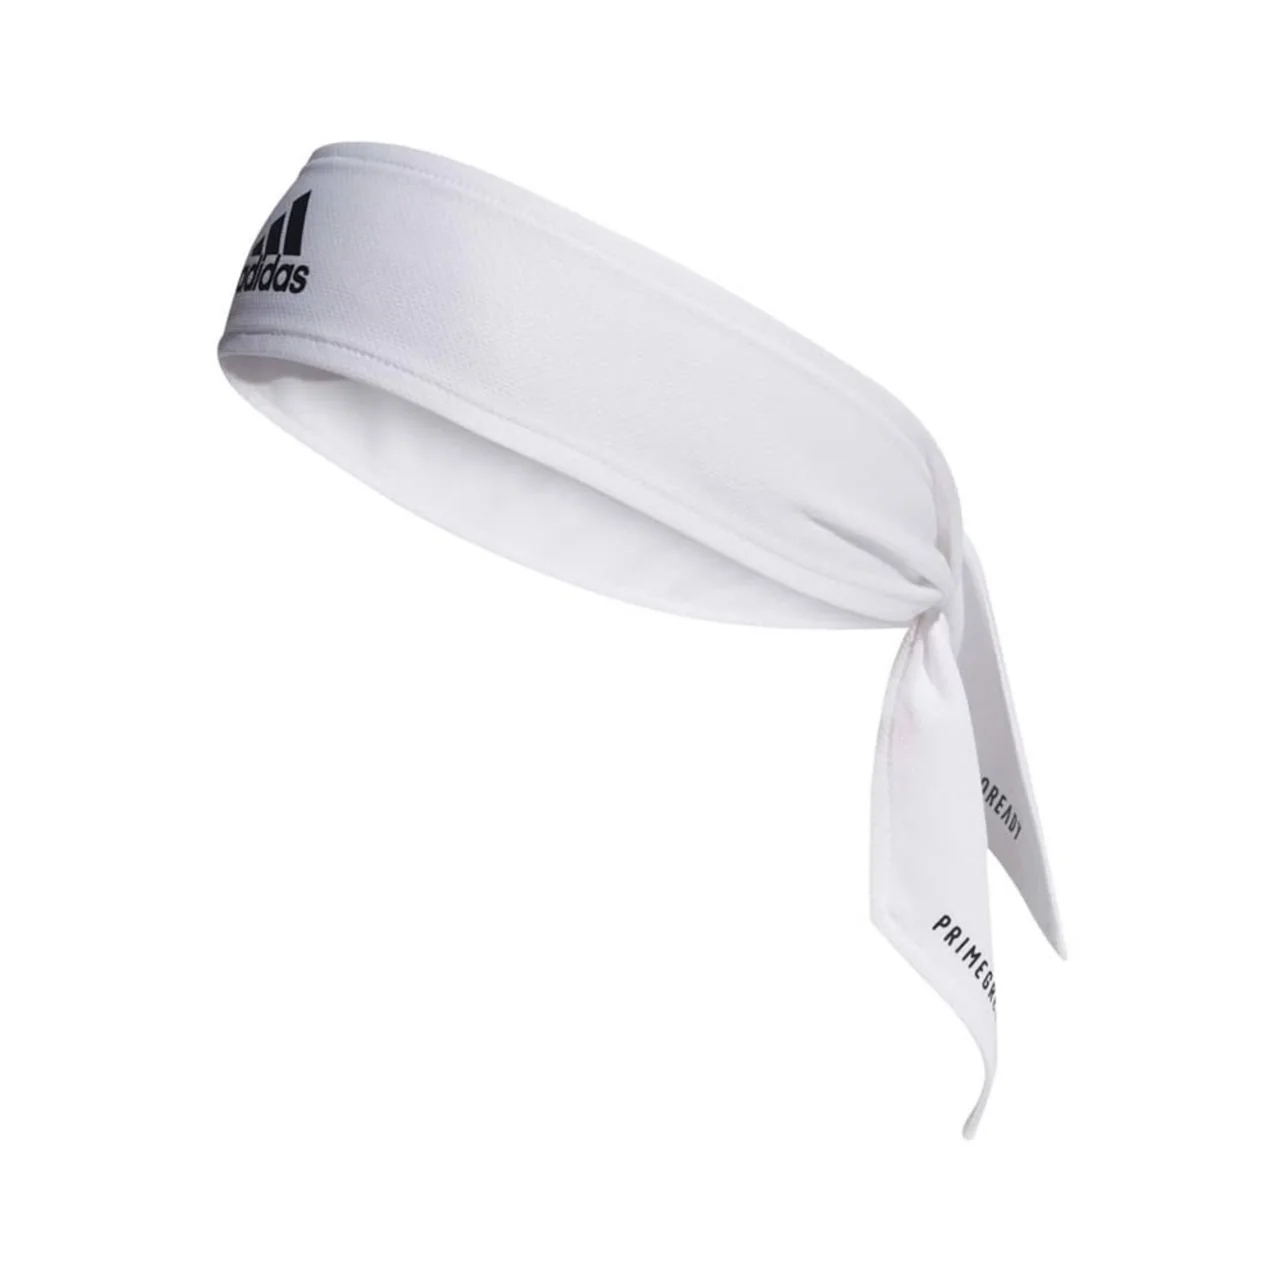 Adidas Tie Headband Primeblue Aeroready White